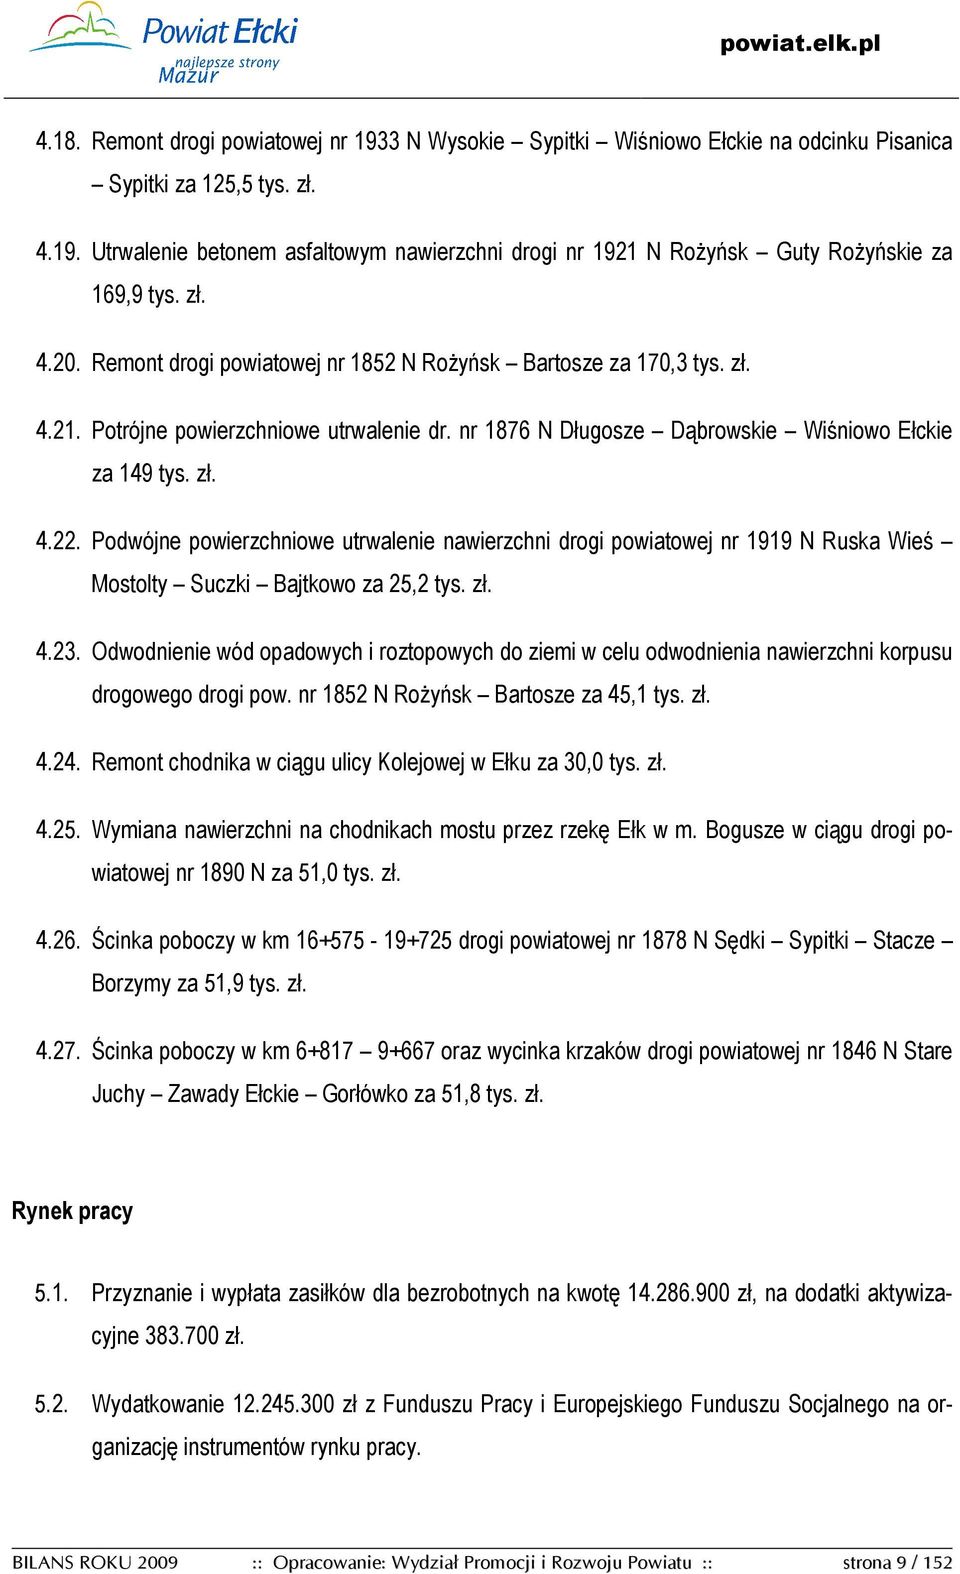 Podwójne powierzchniowe utrwalenie nawierzchni drogi powiatowej nr 1919 N Ruska Wieś Mostolty Suczki Bajtkowo za 25,2 tys. zł. 4.23.